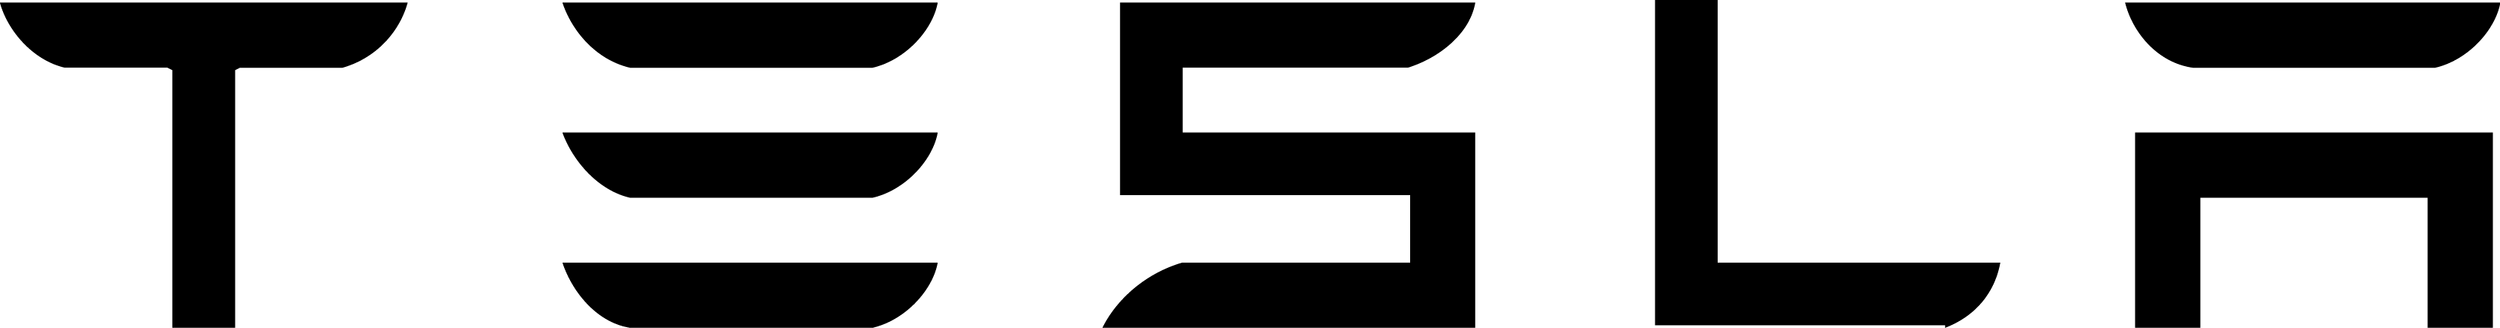 tesla-logo-png-20.png